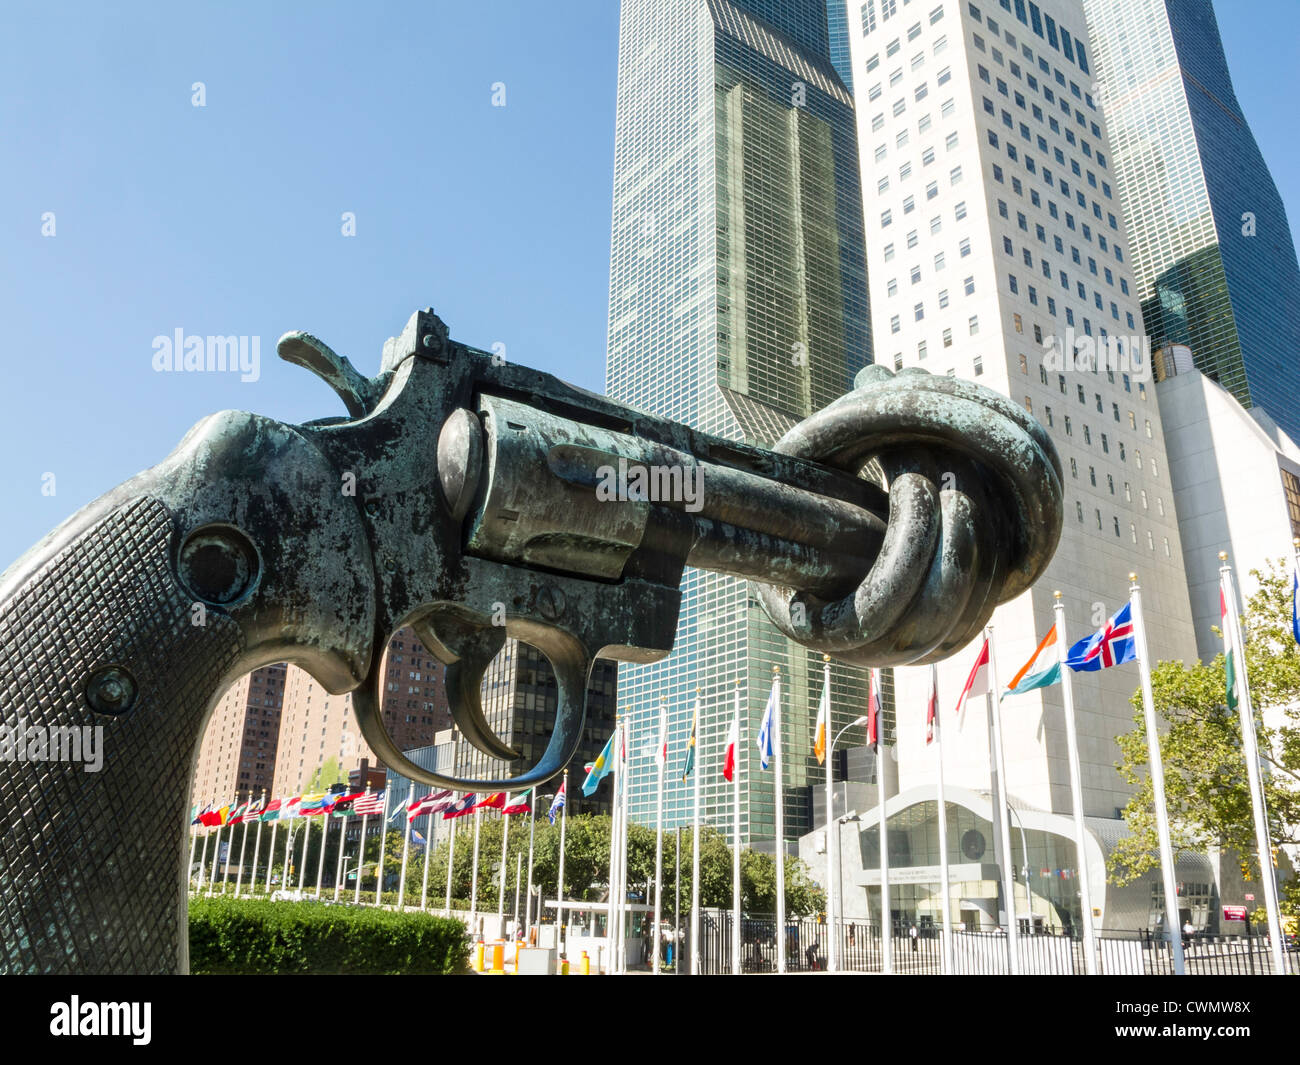 Pistolet noué, appelé Non-violence Sculpture, siège de l'Organisation des Nations Unies, NEW YORK Banque D'Images